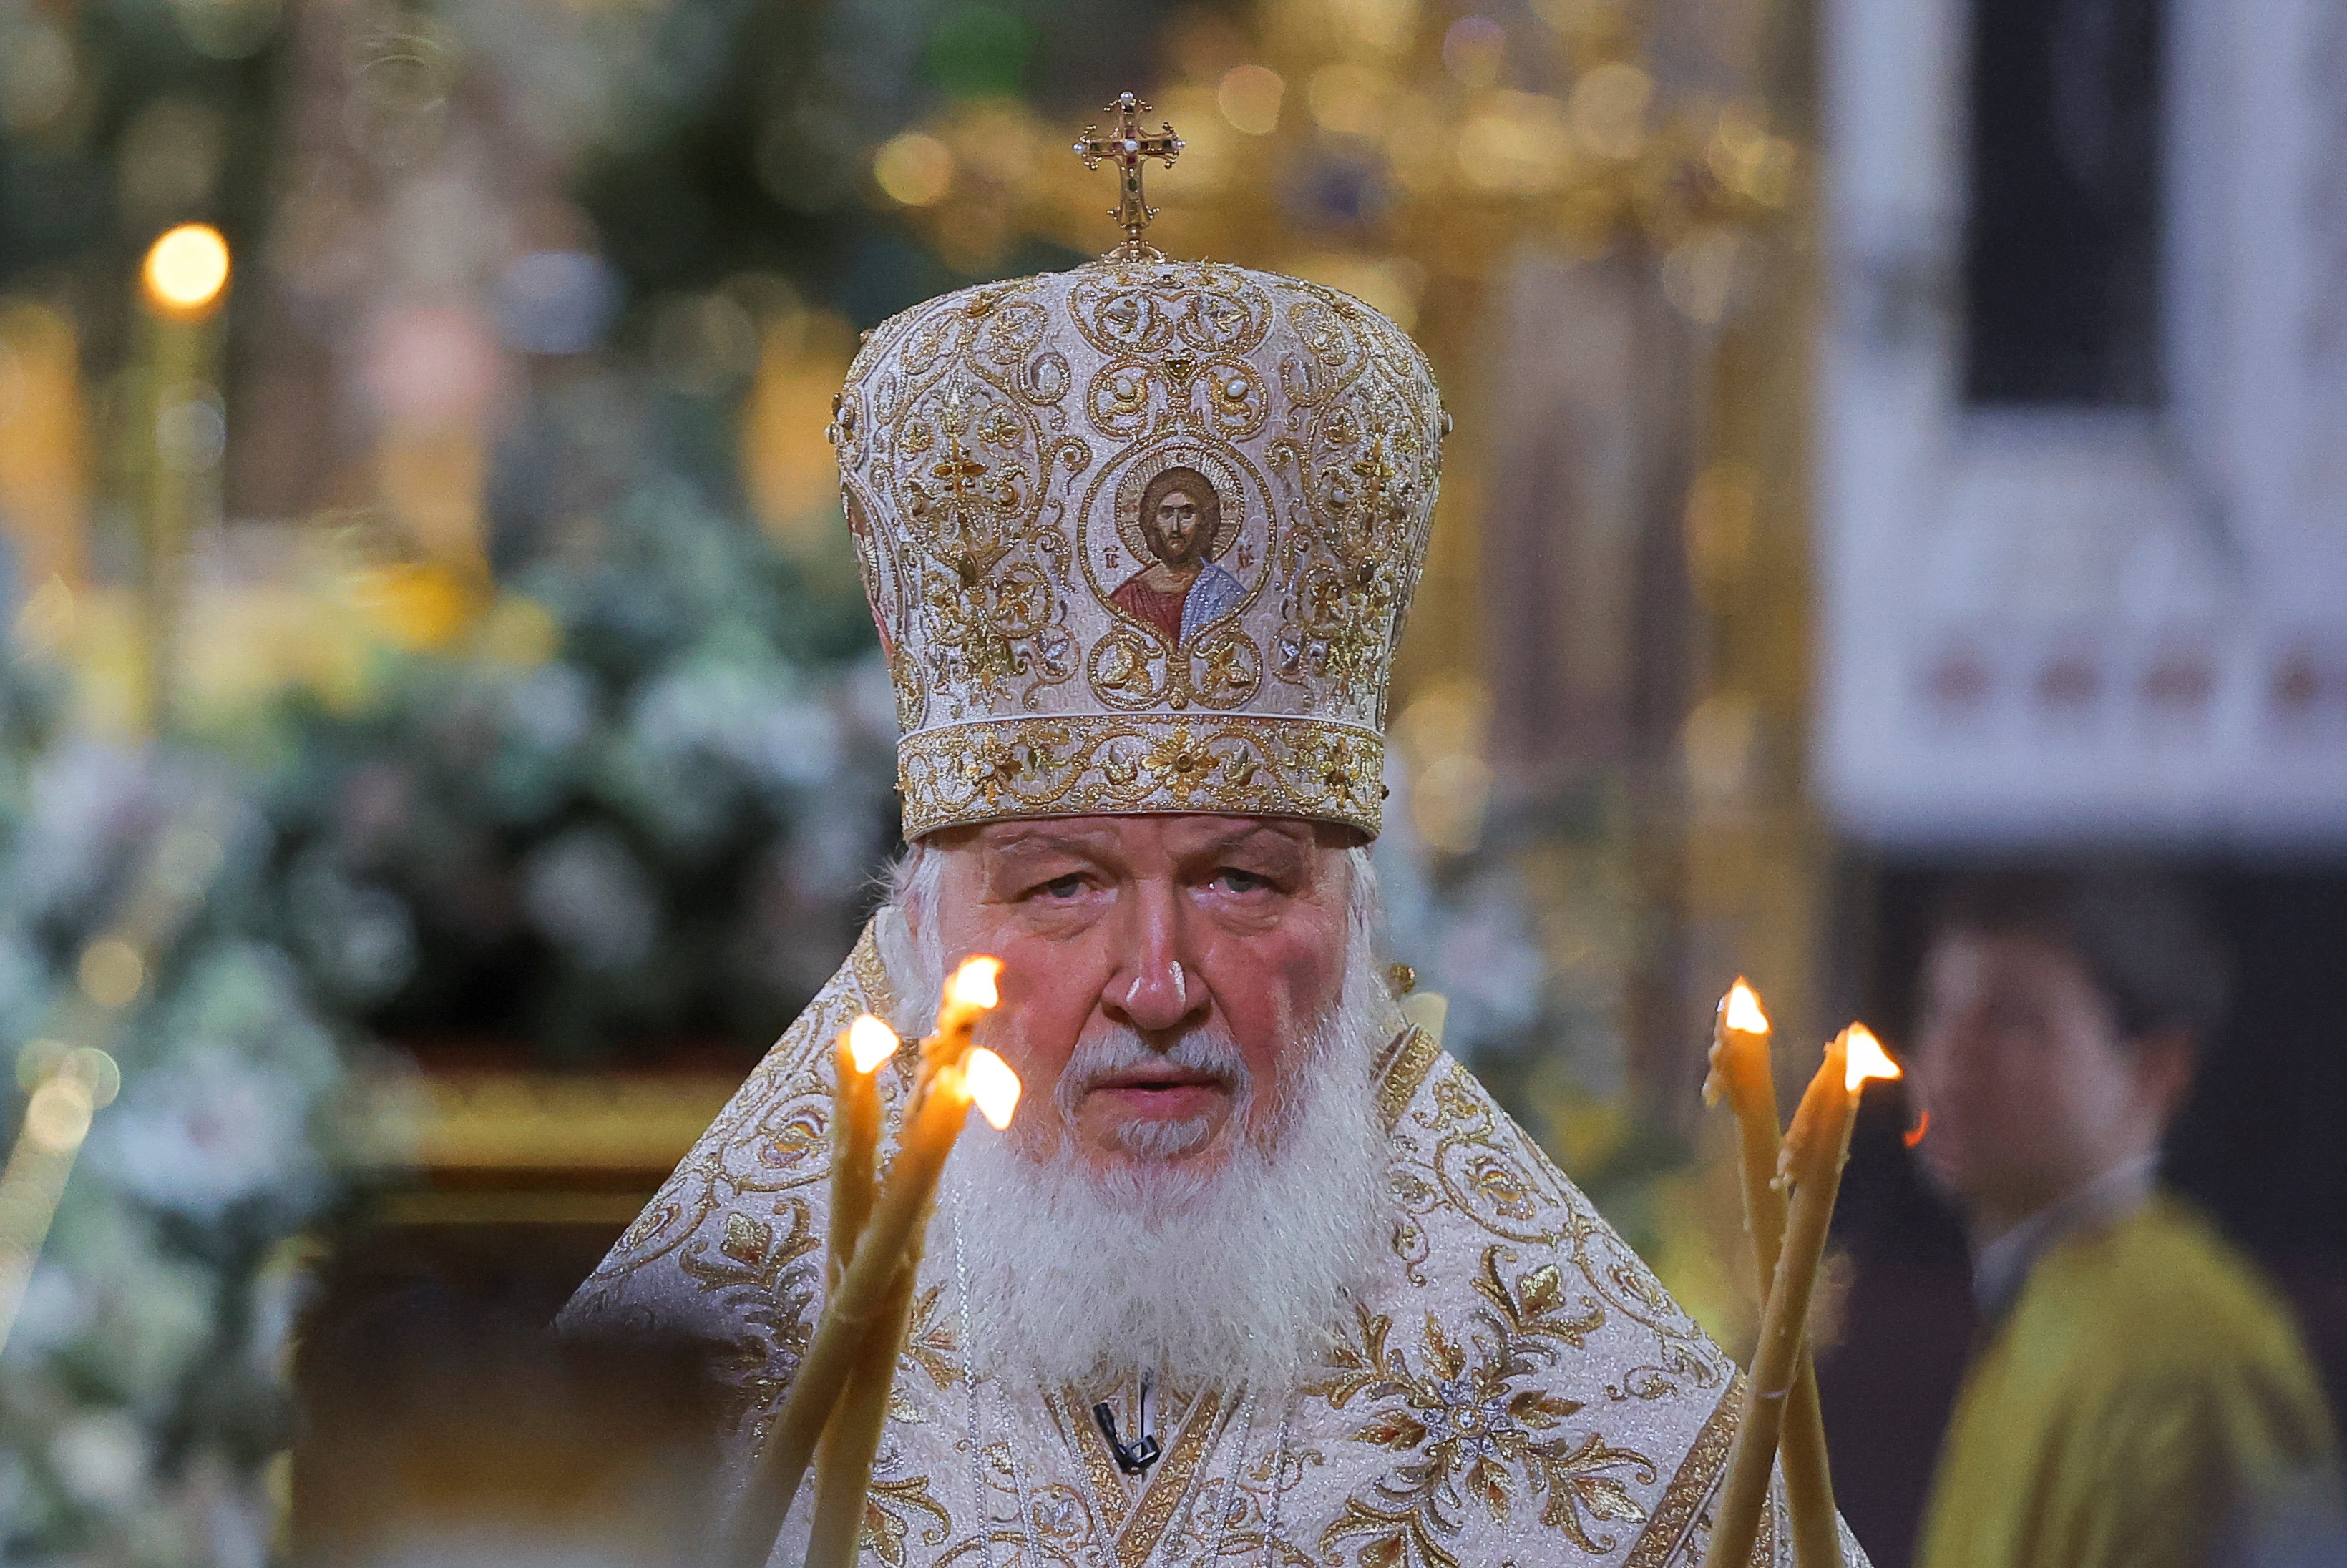 Agente “Mikhailov”: el patriarca de la Iglesia ortodoxa rusa Kirill trabajó para la KGB en los años 70